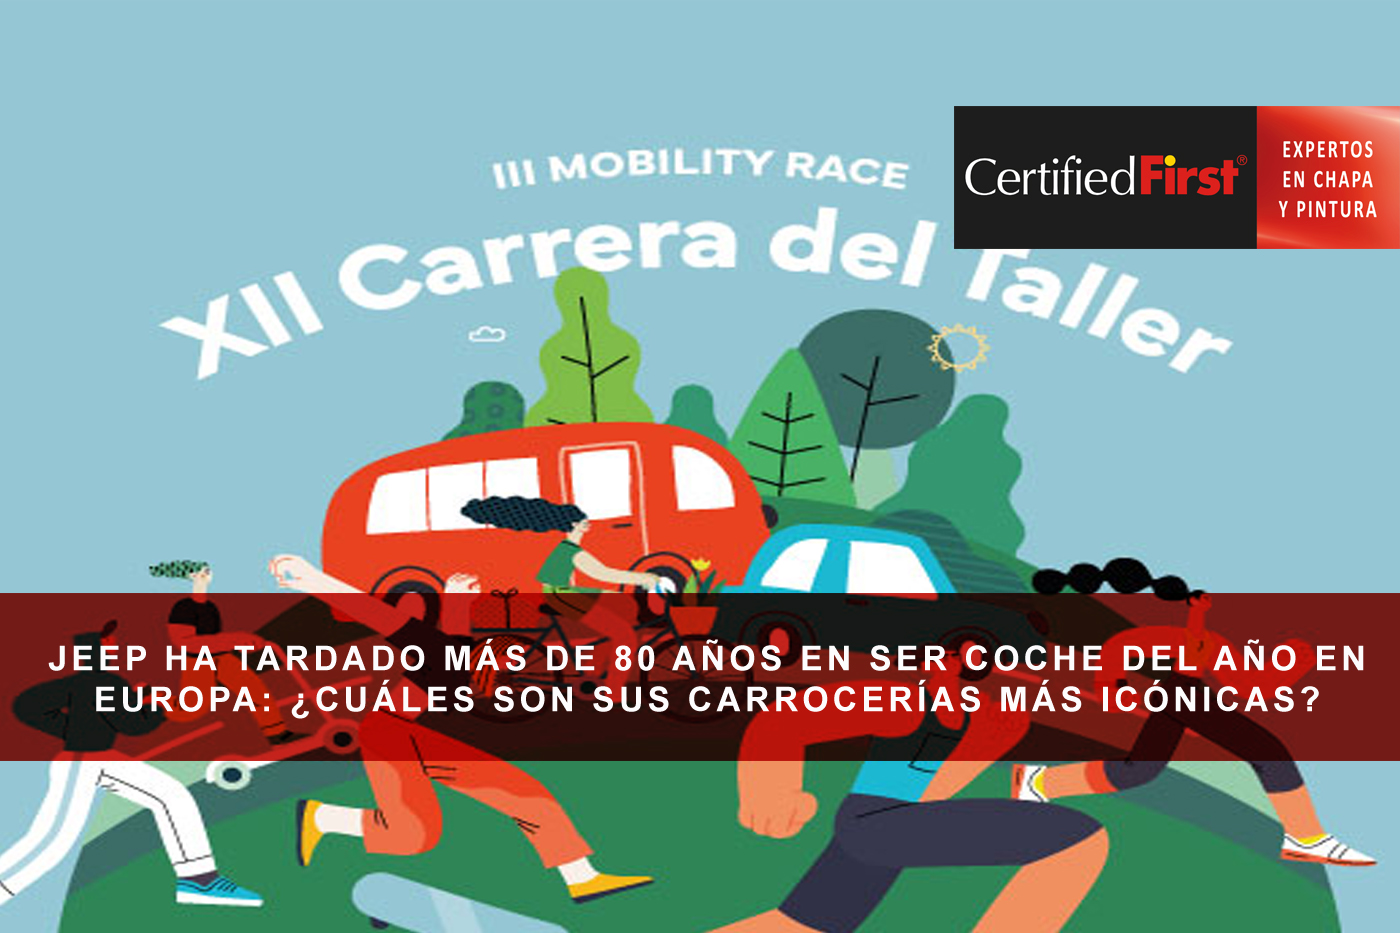 Certified First vuelve a estar presente en esta nueva edición de la Carrera del Taller - Mobility Race